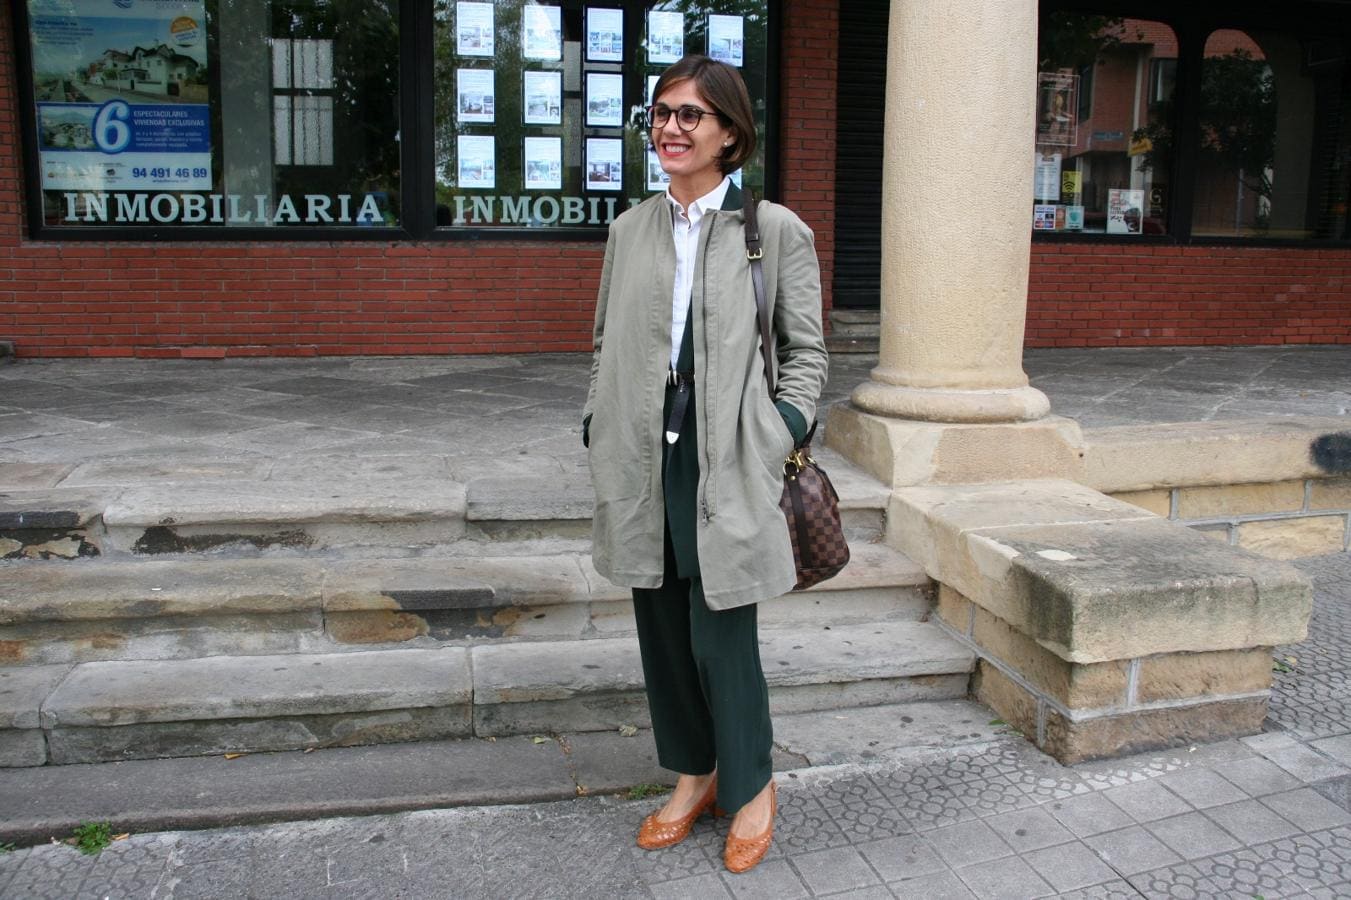 Elena Muguerzo, de 41 años y de Neguri, es toda una profesional en construir estilismos que brillan por sí mismos. Se compró el 'outfit' en una tienda de Eibar llamada Cedry. Y se compone de un traje de dos piezas en verde oscuro, una camisa blanca y una chaqueta. Completa el look con un bolso de Louis Vuitton y unos zapatos de tacón en color mostaza que adquirió en una tienda de la calle bilbaína Alameda Recalde. 